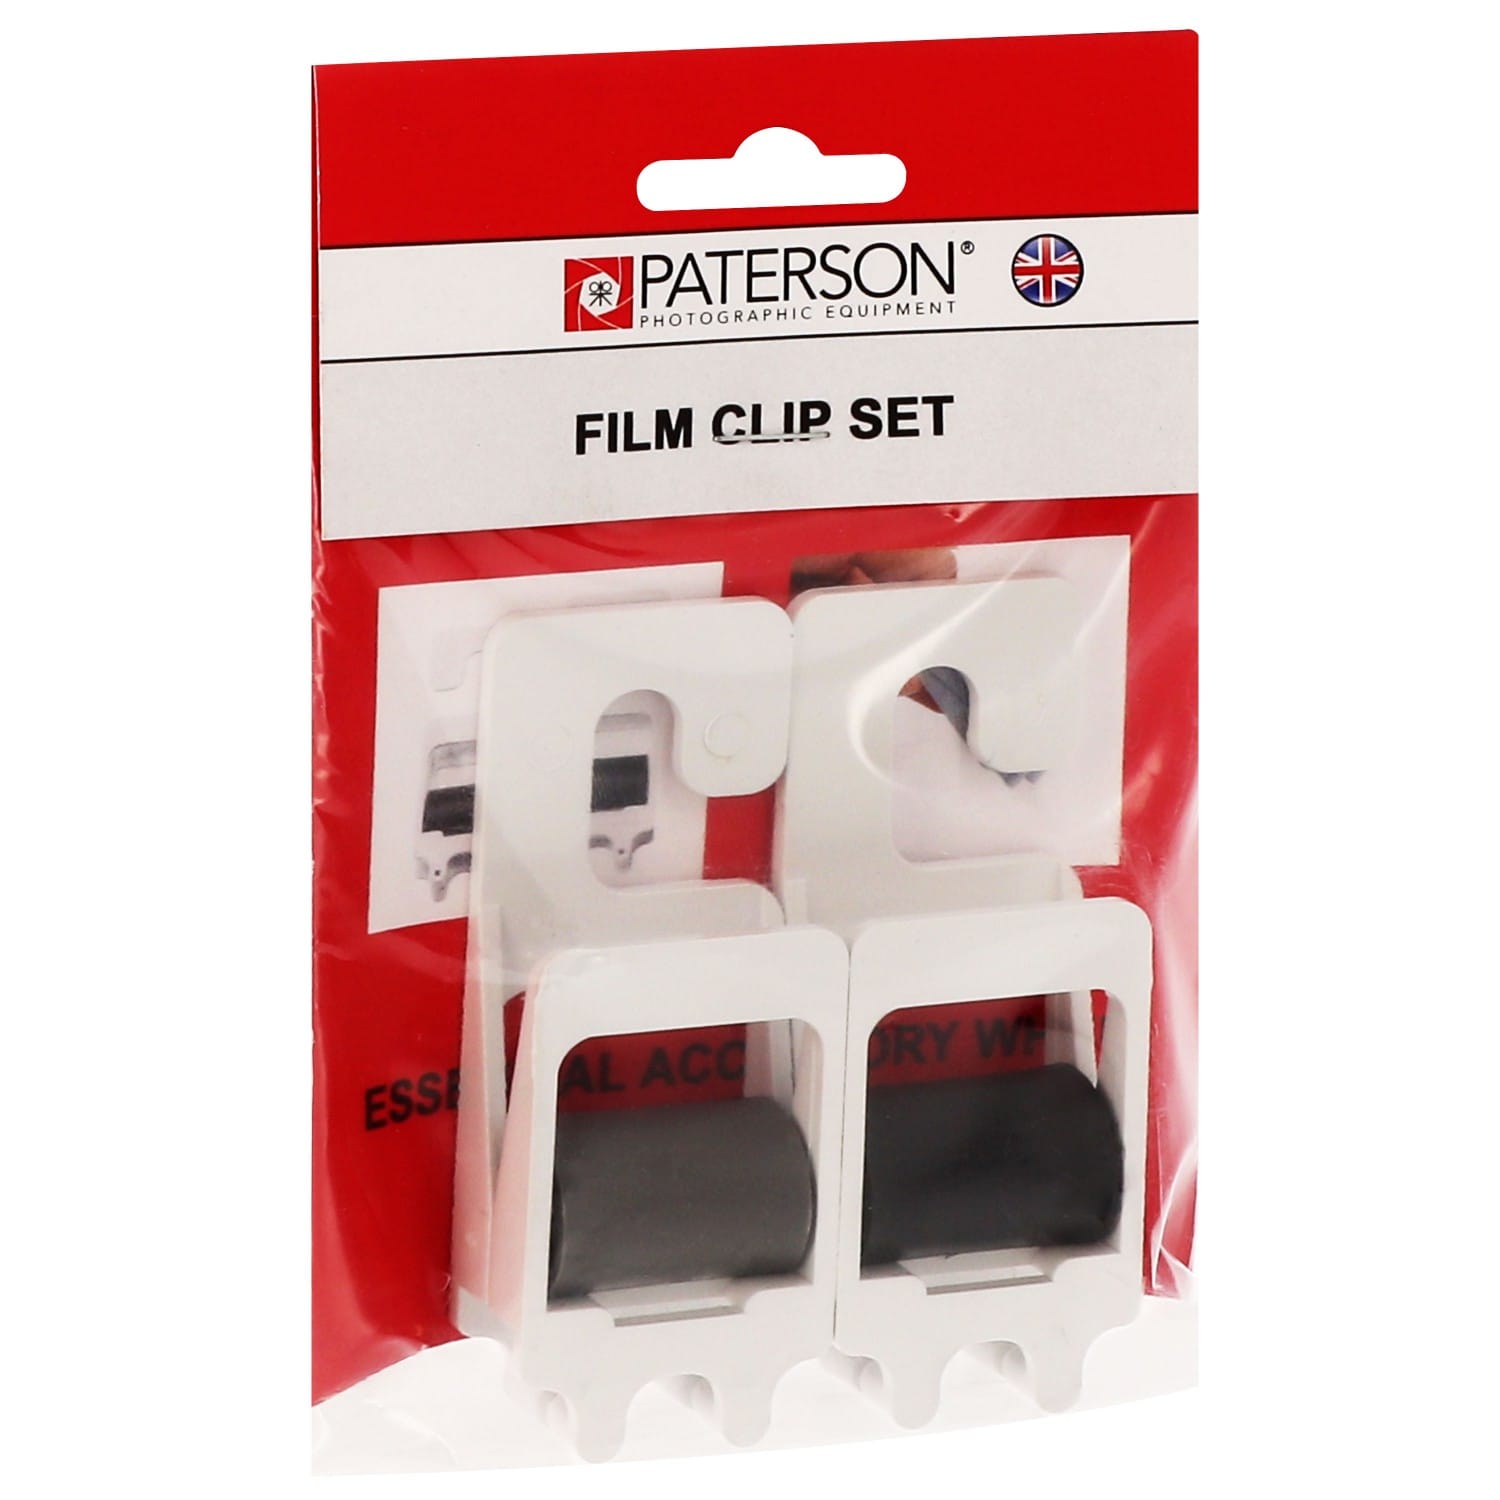 Pince film PATERSON en plastique et acier inoxydable - Lot de 2 clips